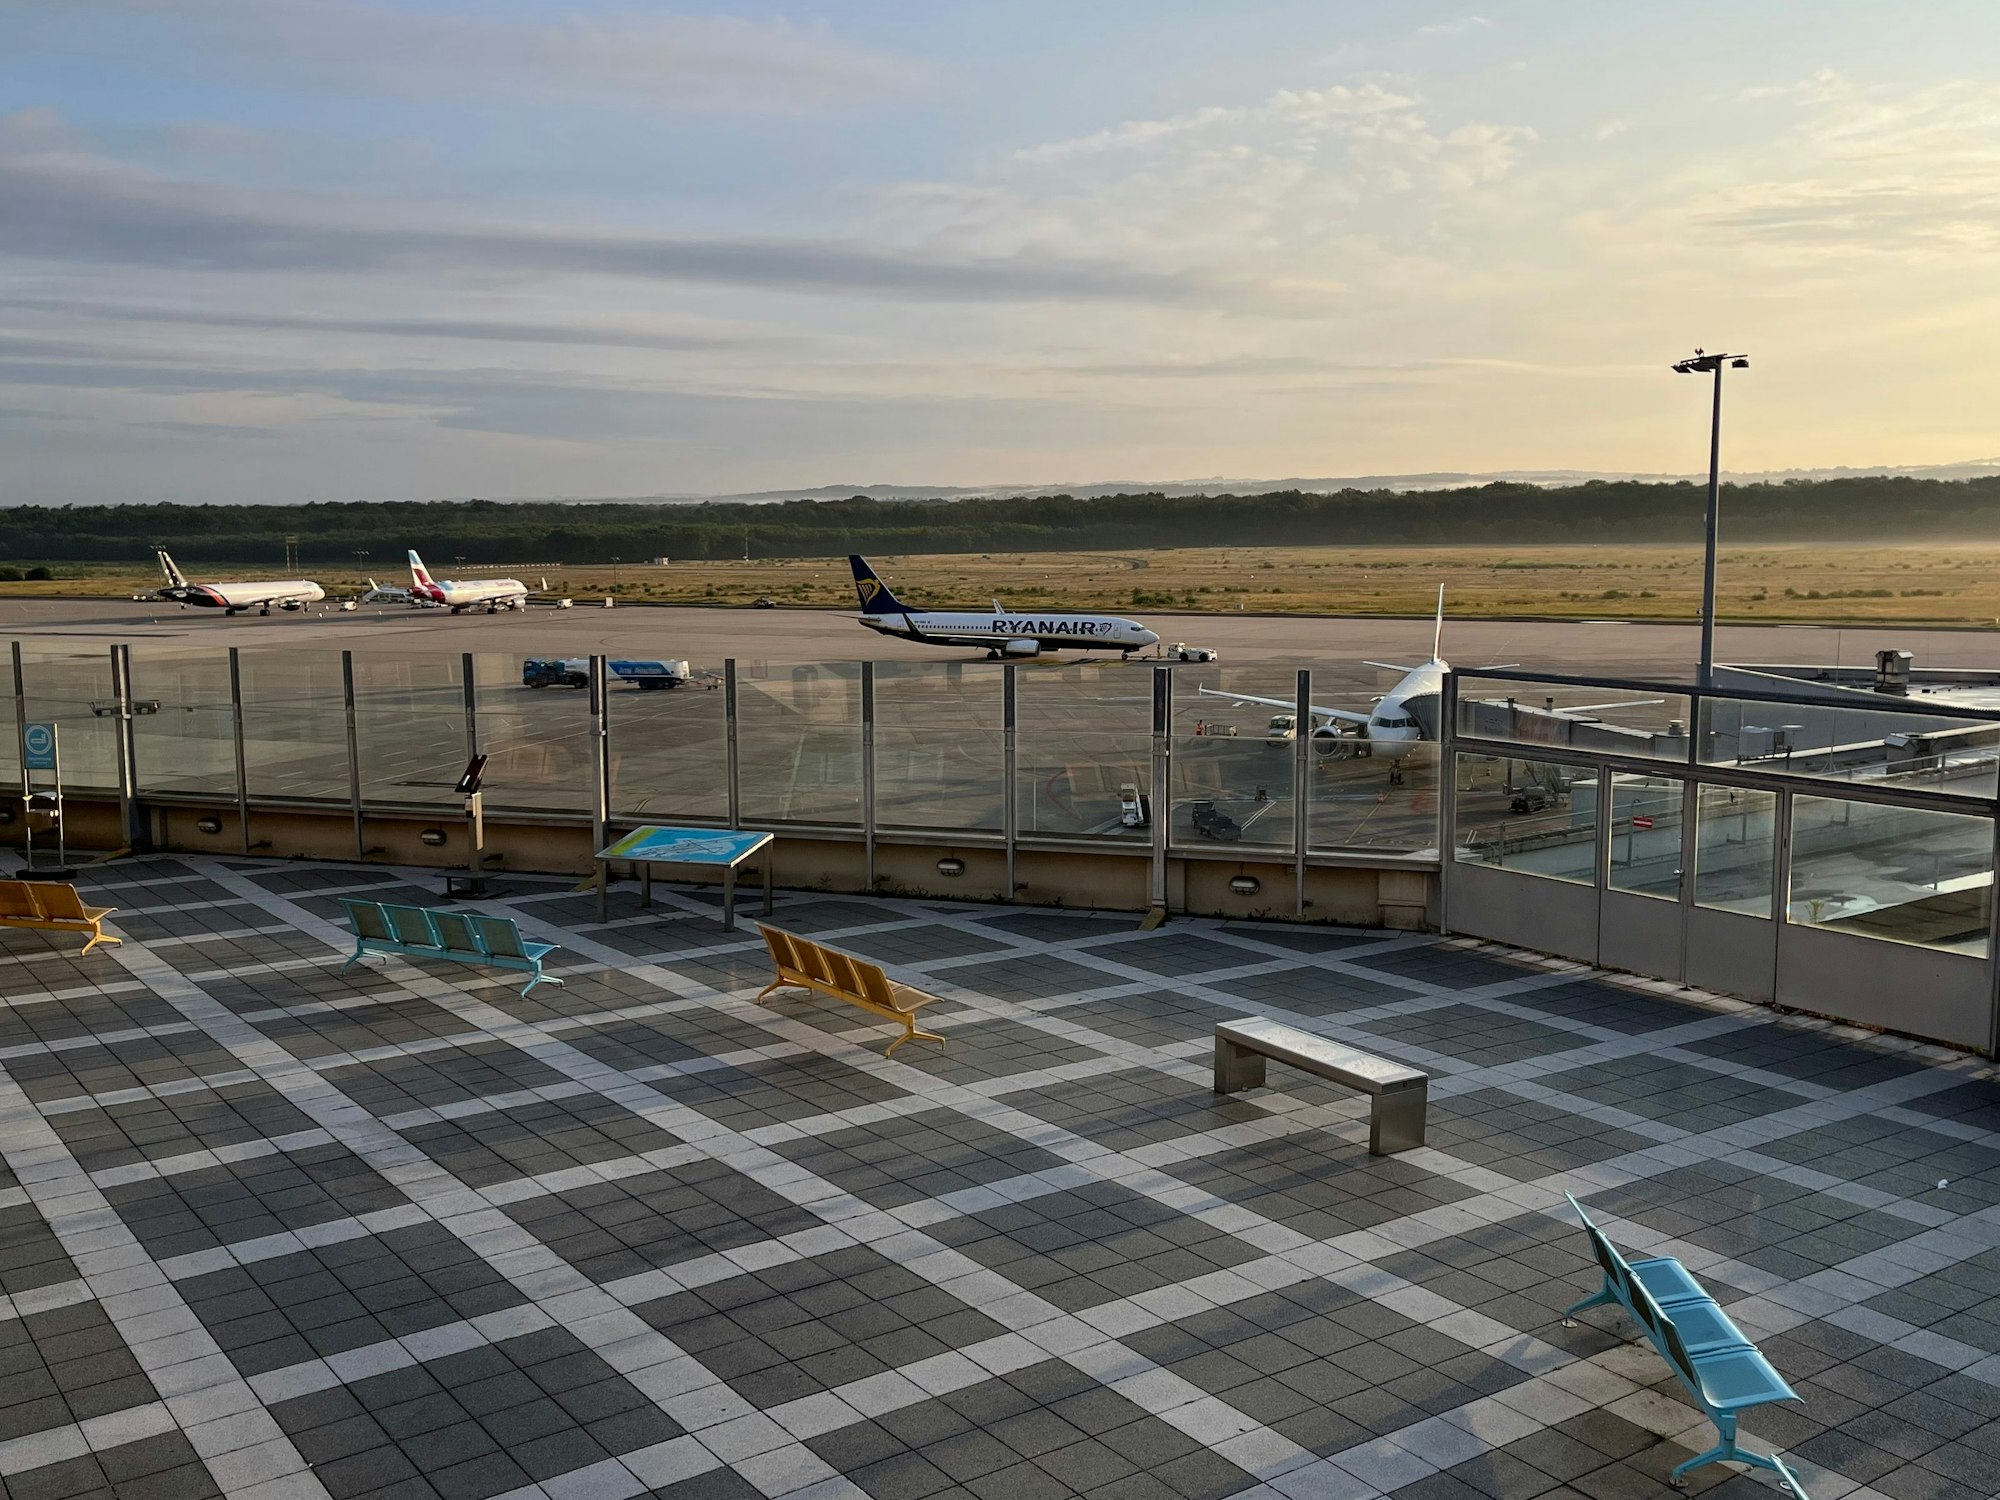 Von der Terrasse blickt man auf eine Start- und Landebahn und mehrere Flieger, die am Boden stehen.